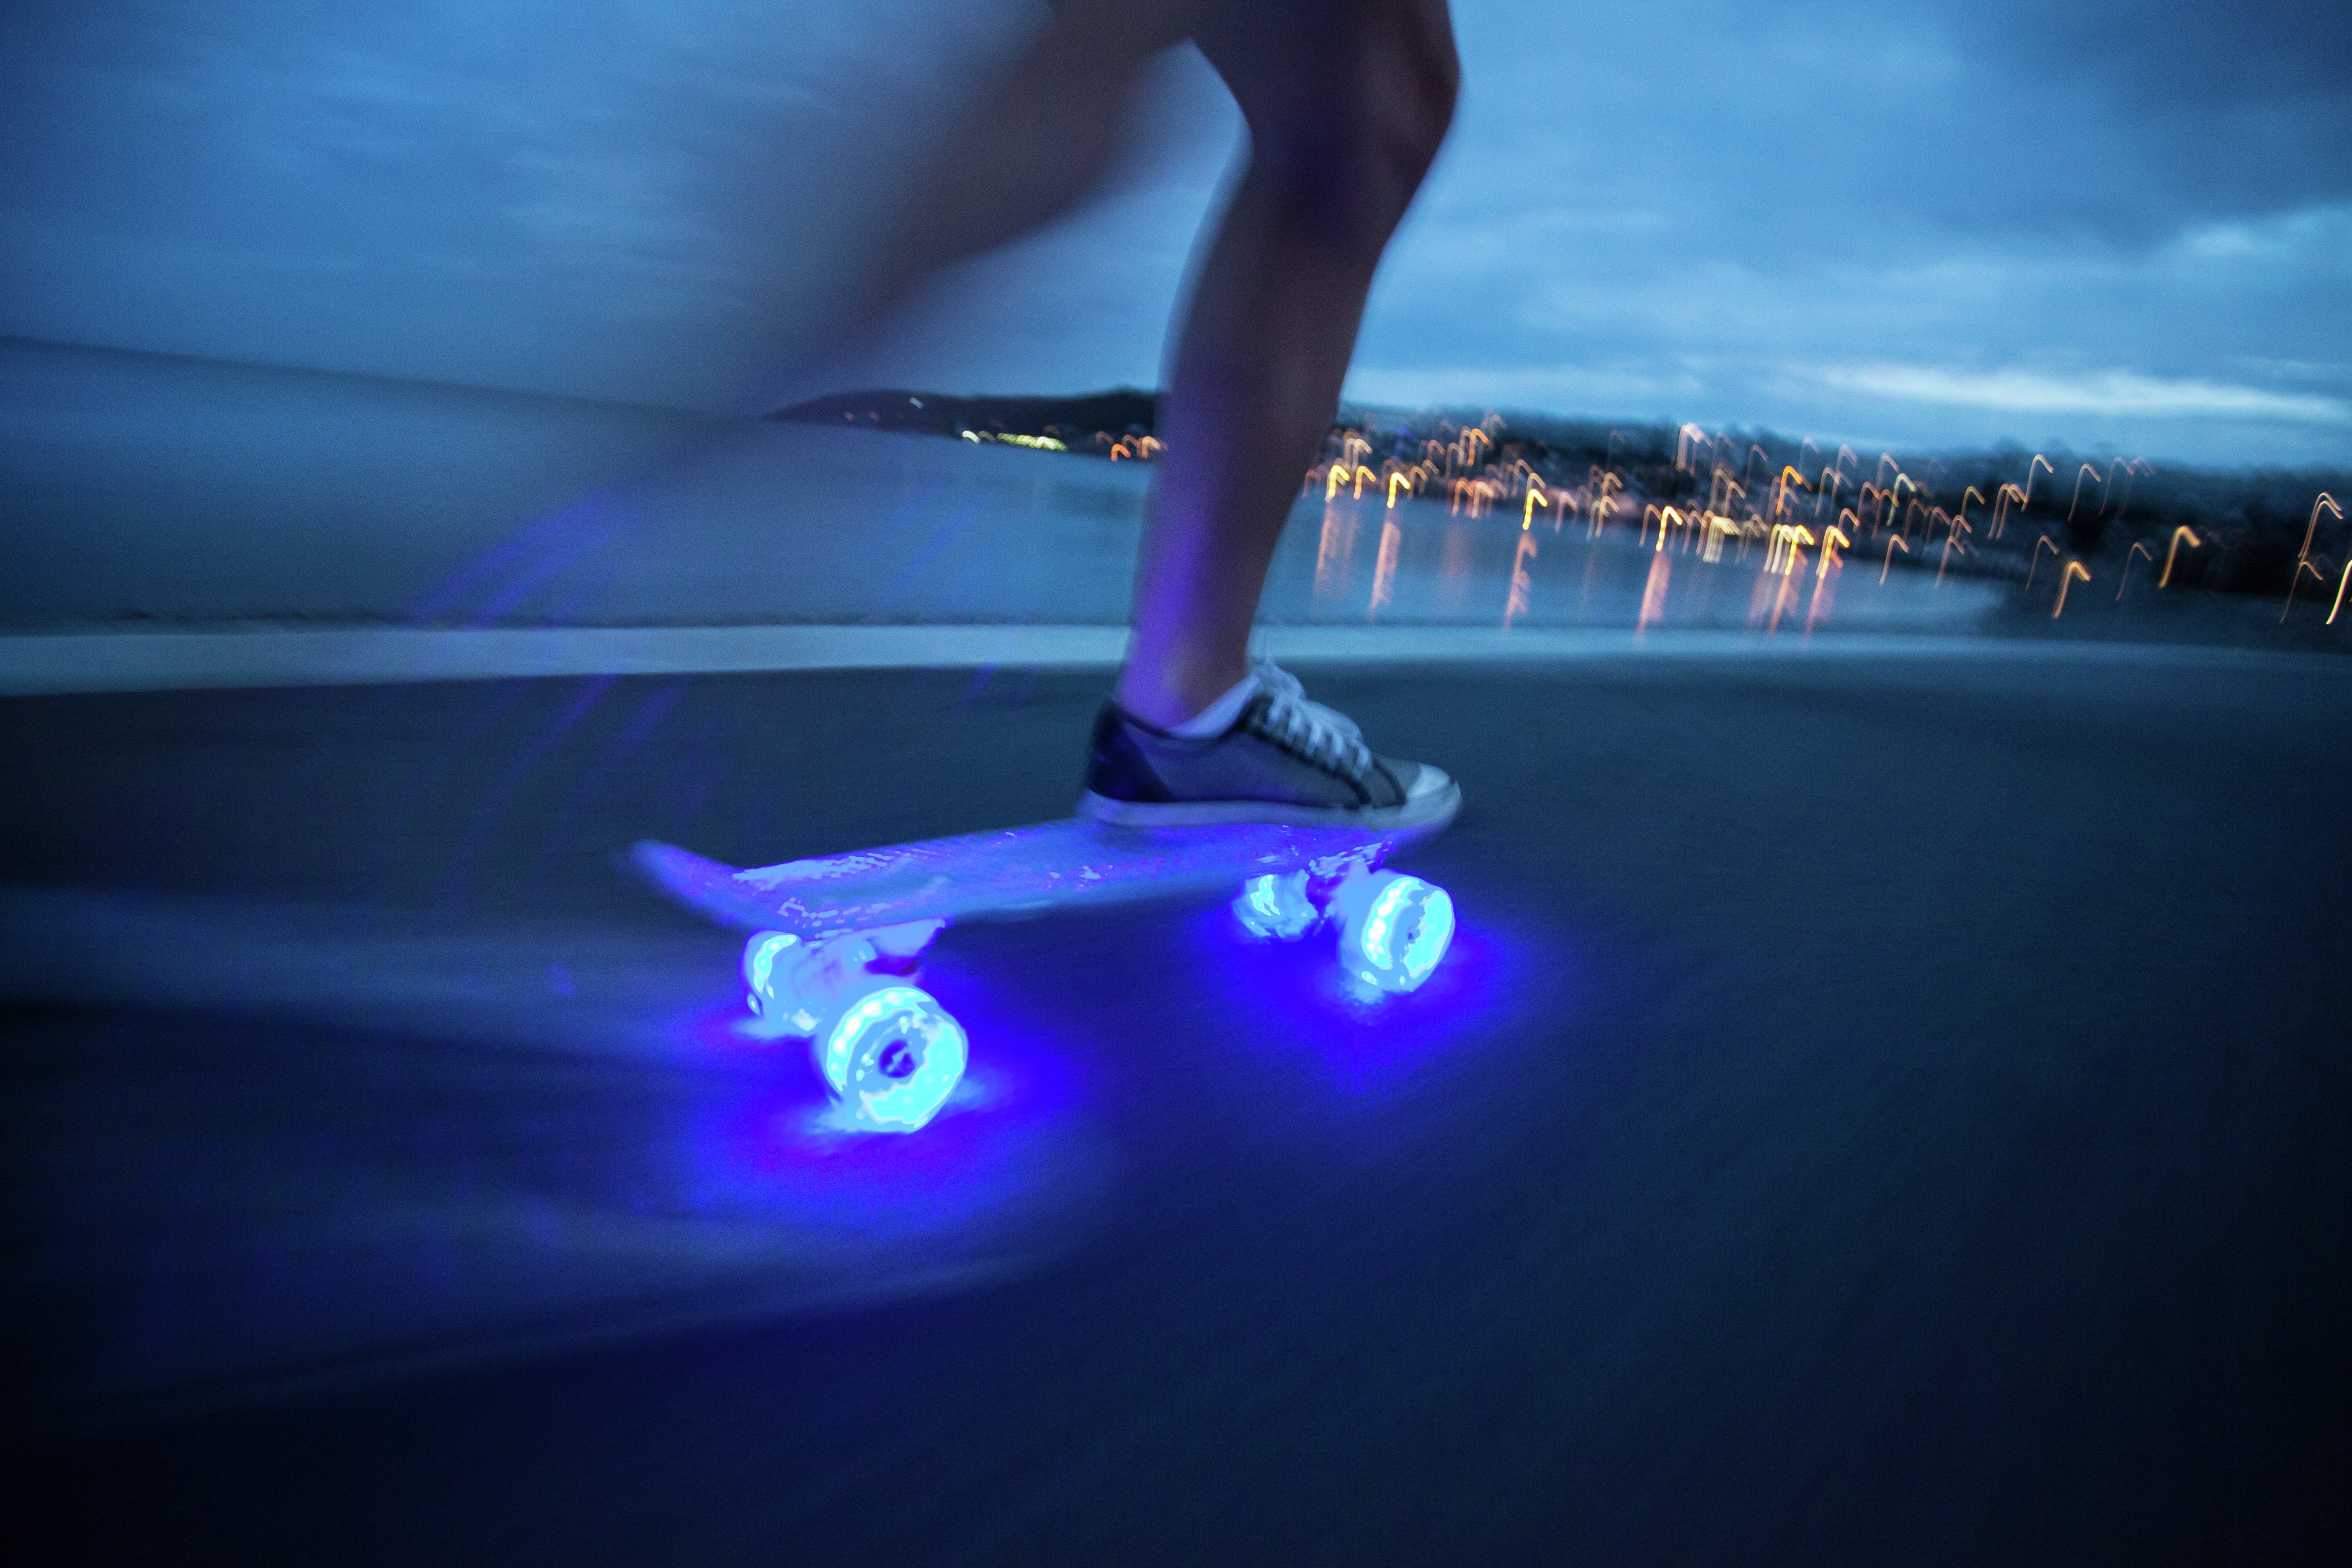 Mello LED 22 Inch Cruiser Skateboard - Blueberry